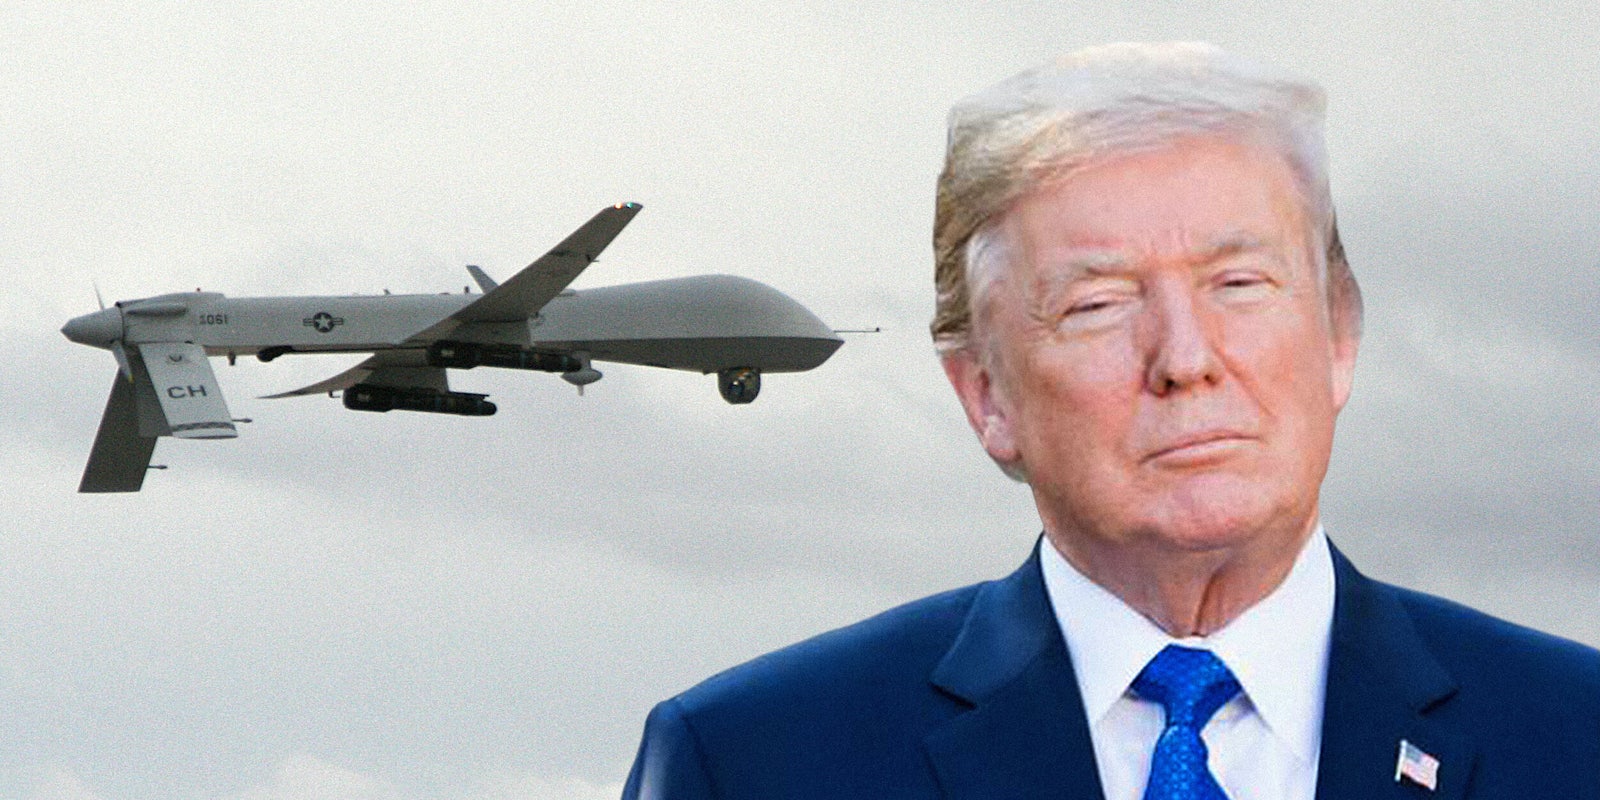 Predator drone with Donald Trump